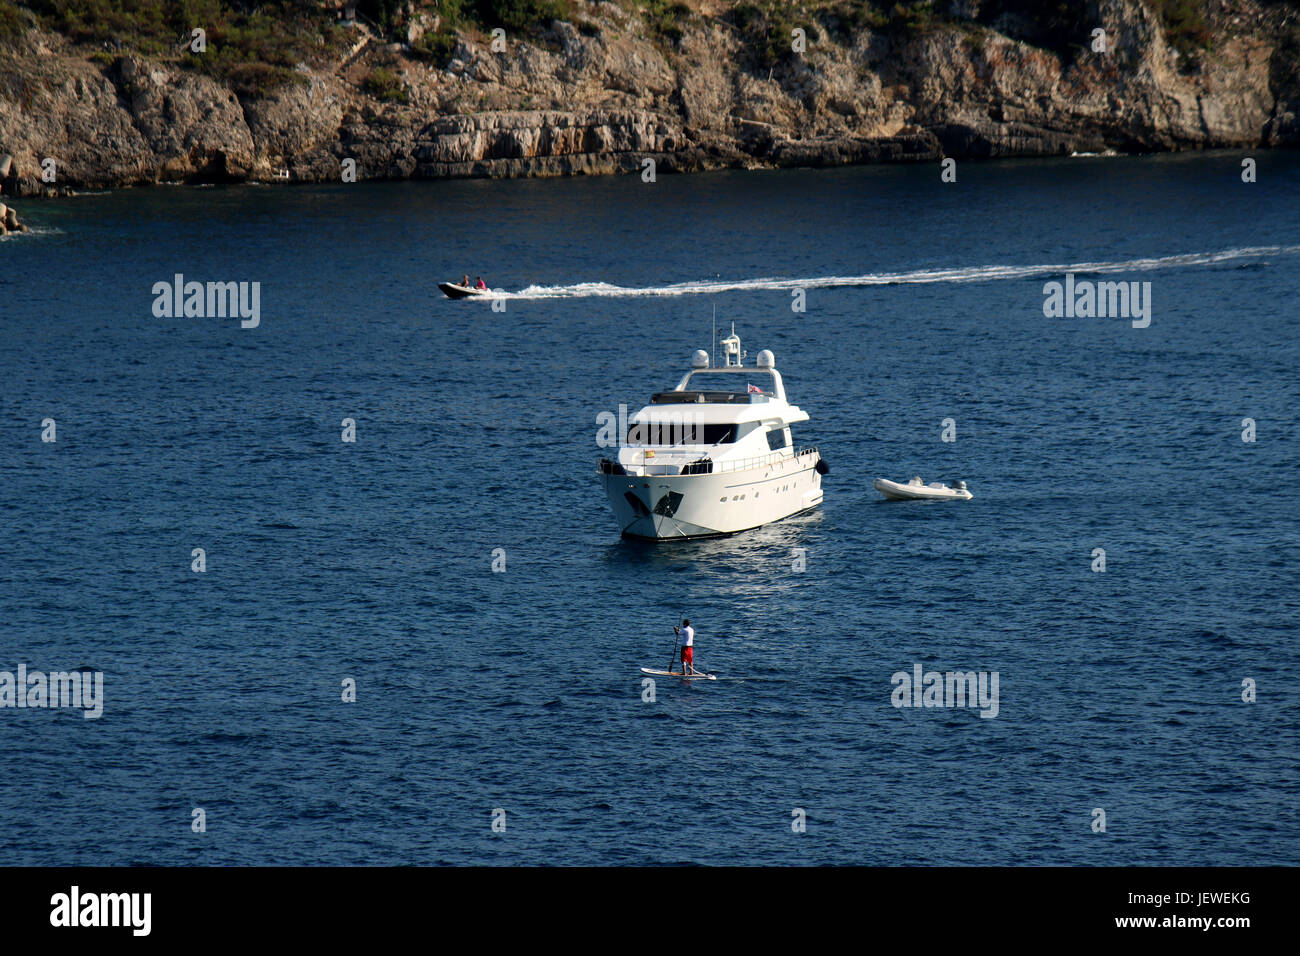 Superyacht Haven -  Motor Superyacht + SUP + RIBs - Bay of Santa Ponsa / Santa Ponca, Calvia, SW Mallorca / Majorca, Baleares / Balearic Islands Stock Photo